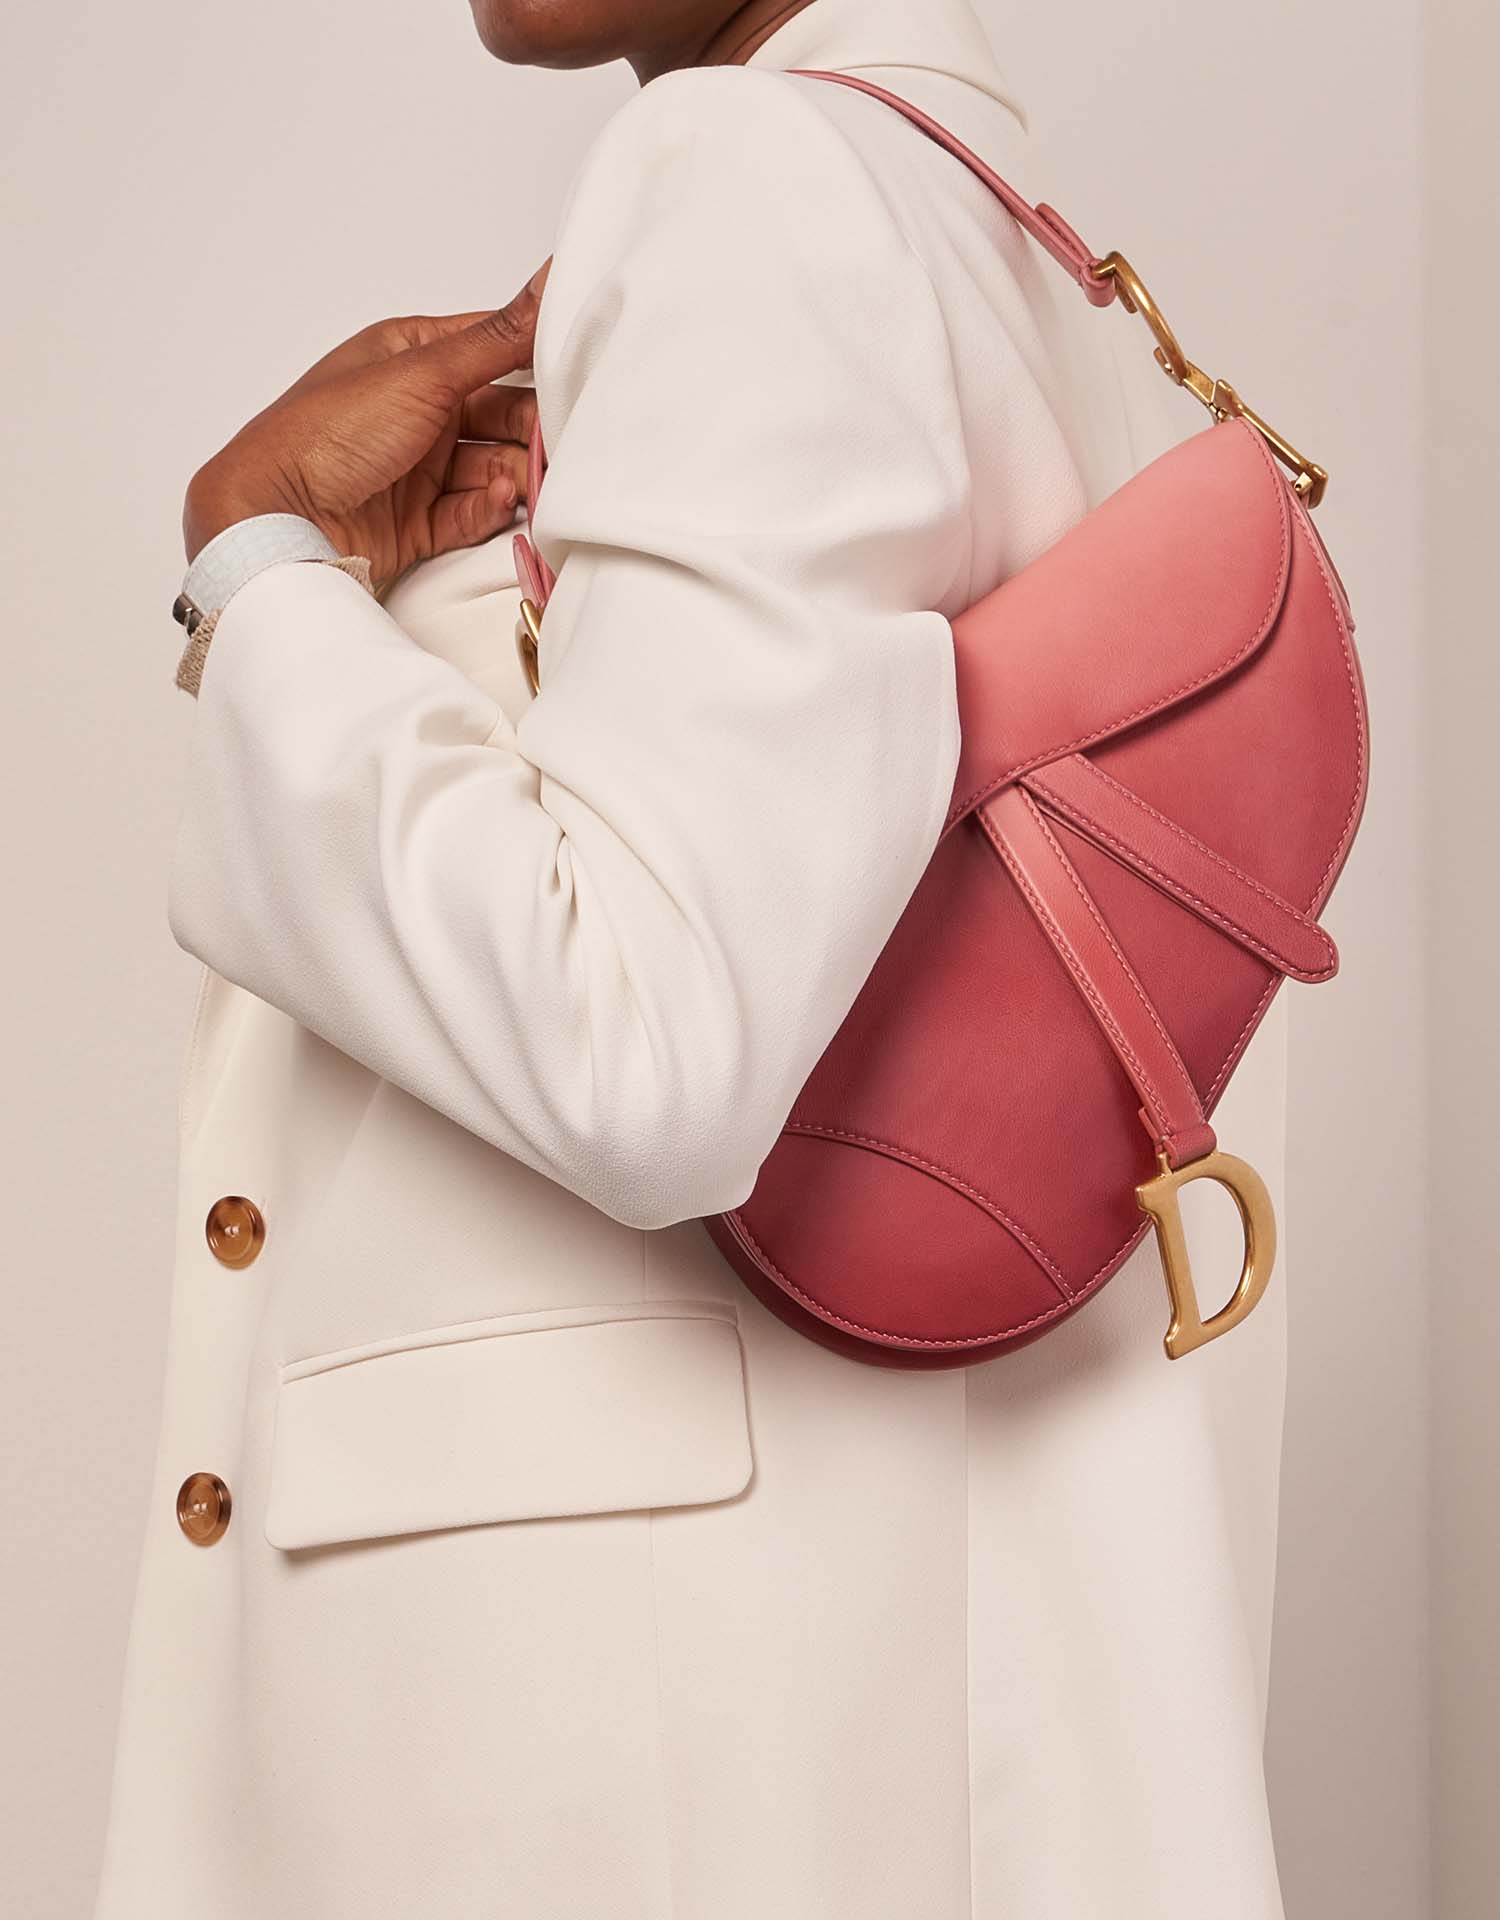 Dior Saddle Medium Pink Sizes Worn | Verkaufen Sie Ihre Designer-Tasche auf Saclab.com